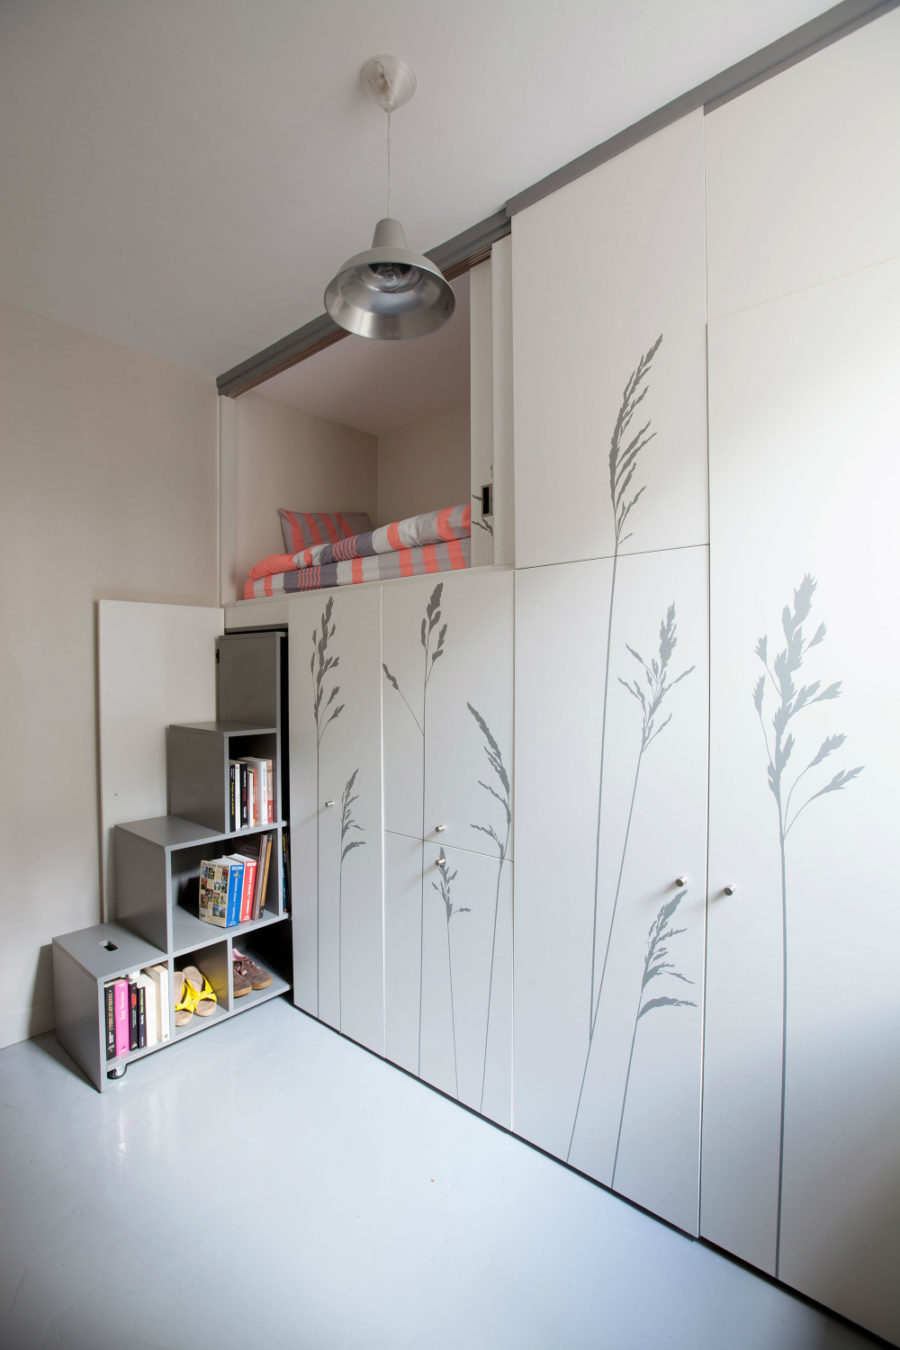 8-square-meter apartment in Paris